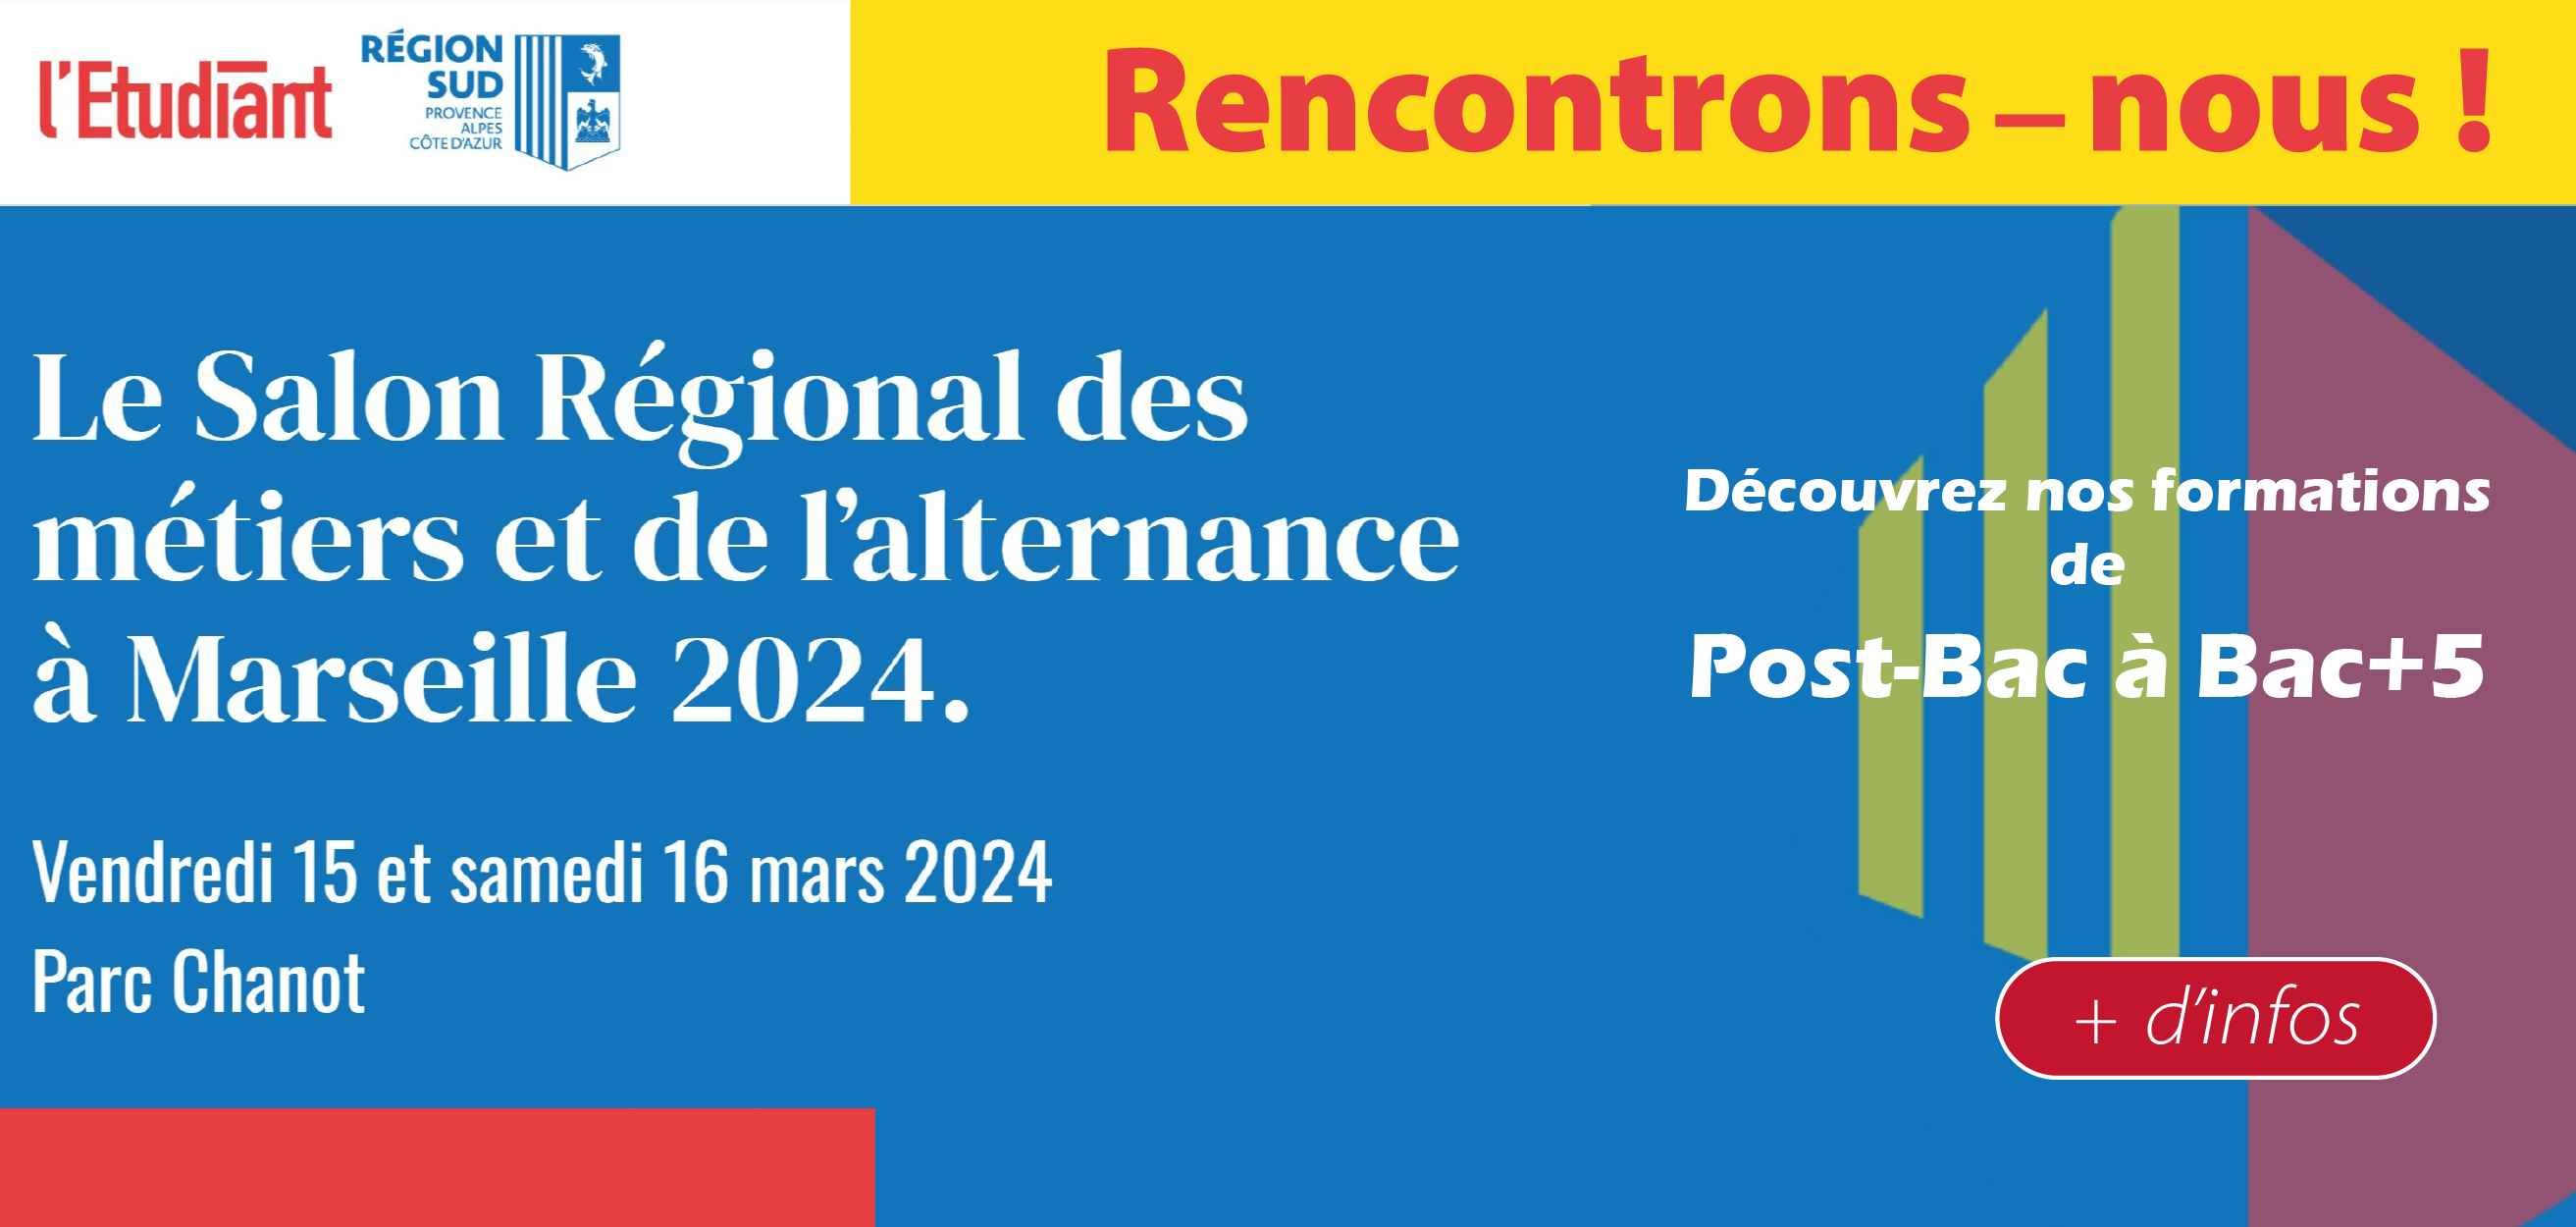  Le Salon Régional des métiers et de l’alternance
                        à Marseille 2024. 
                        
                        Vendredi 15 et samedi 16 mars 2024
                        Parc Chanot
                        